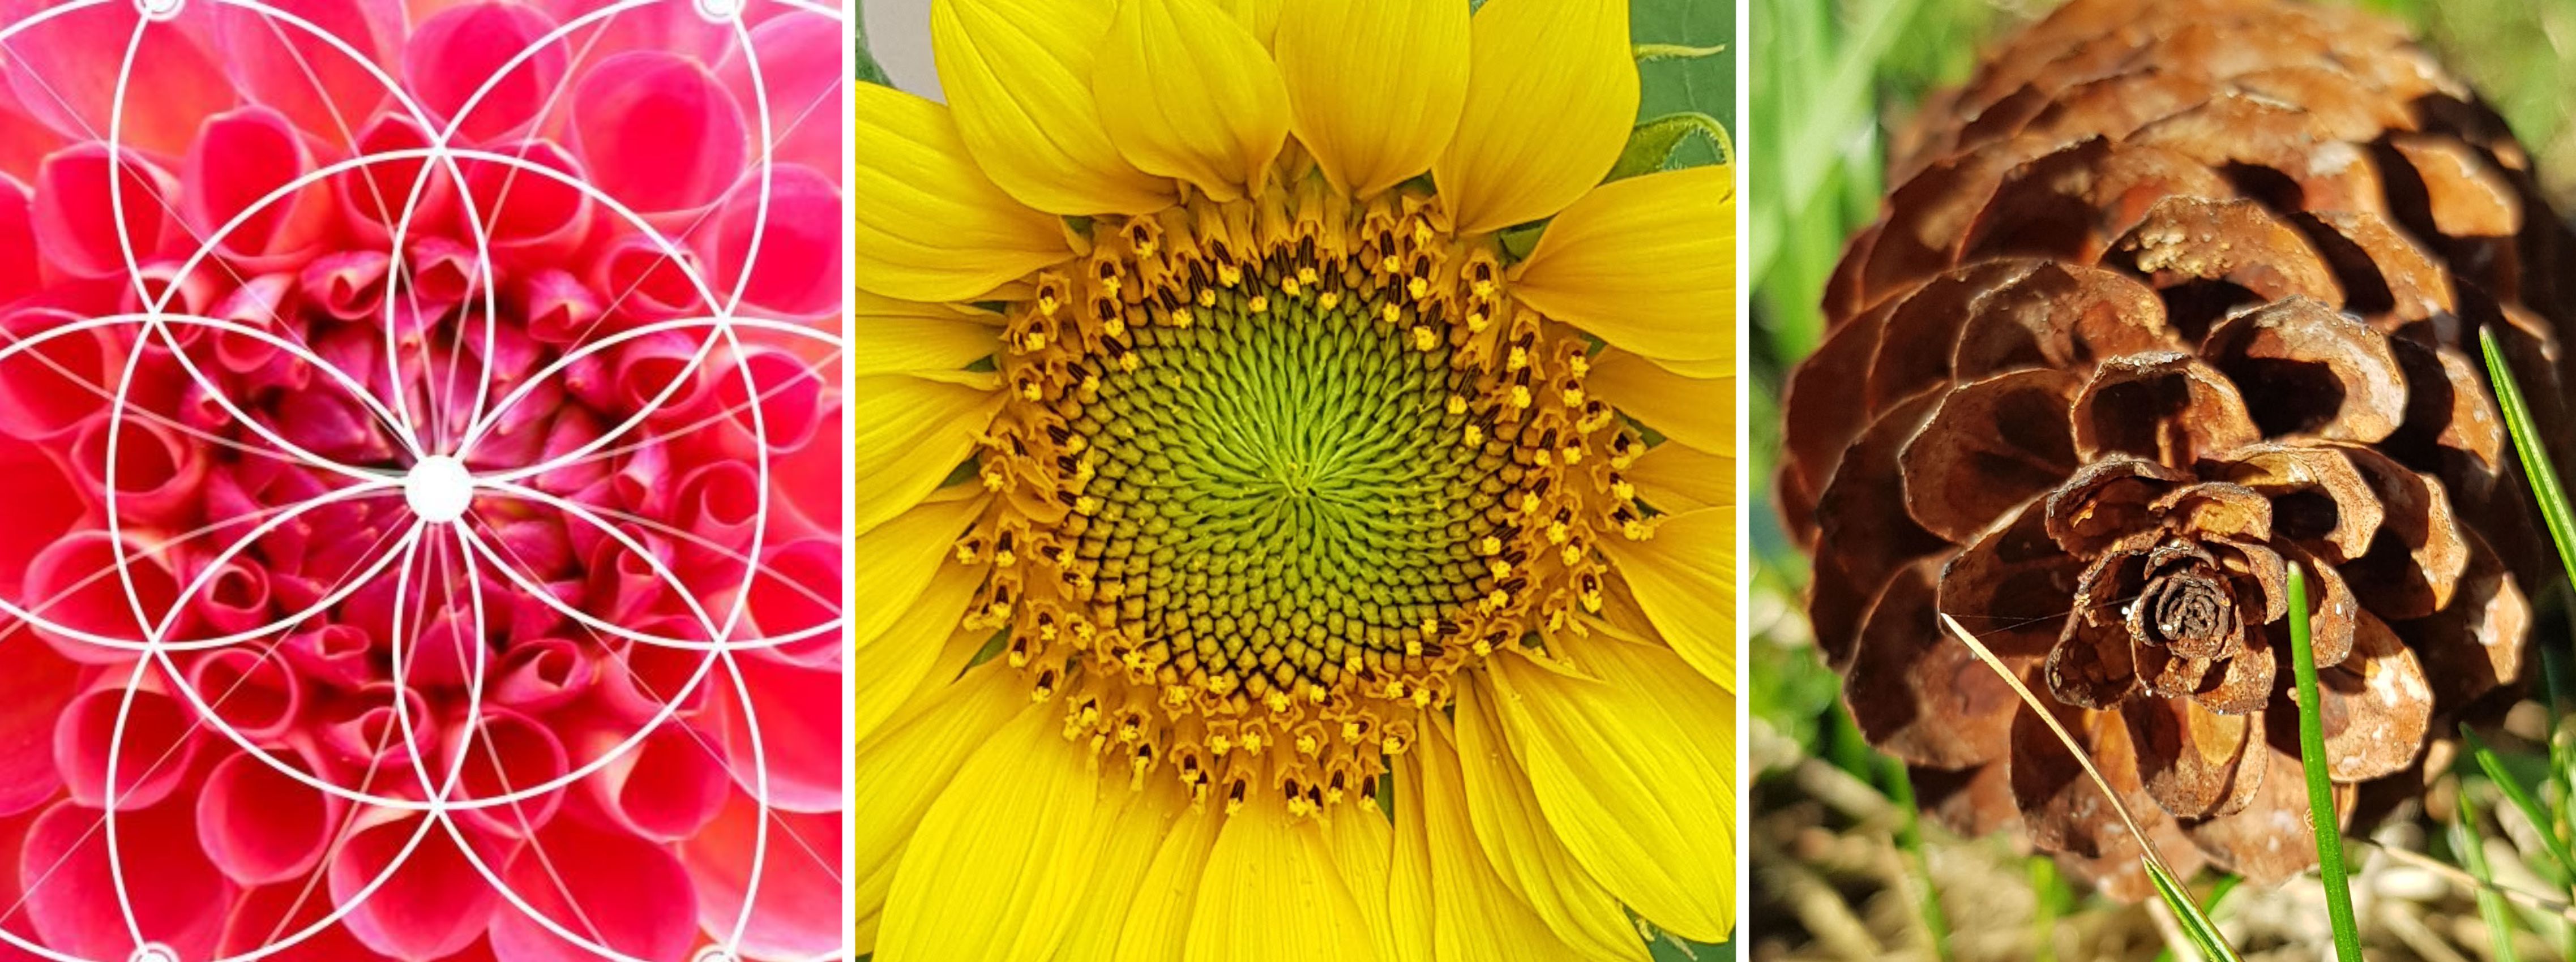 Attrape-soleil Fleur de Vie avec 7 cristaux colorés